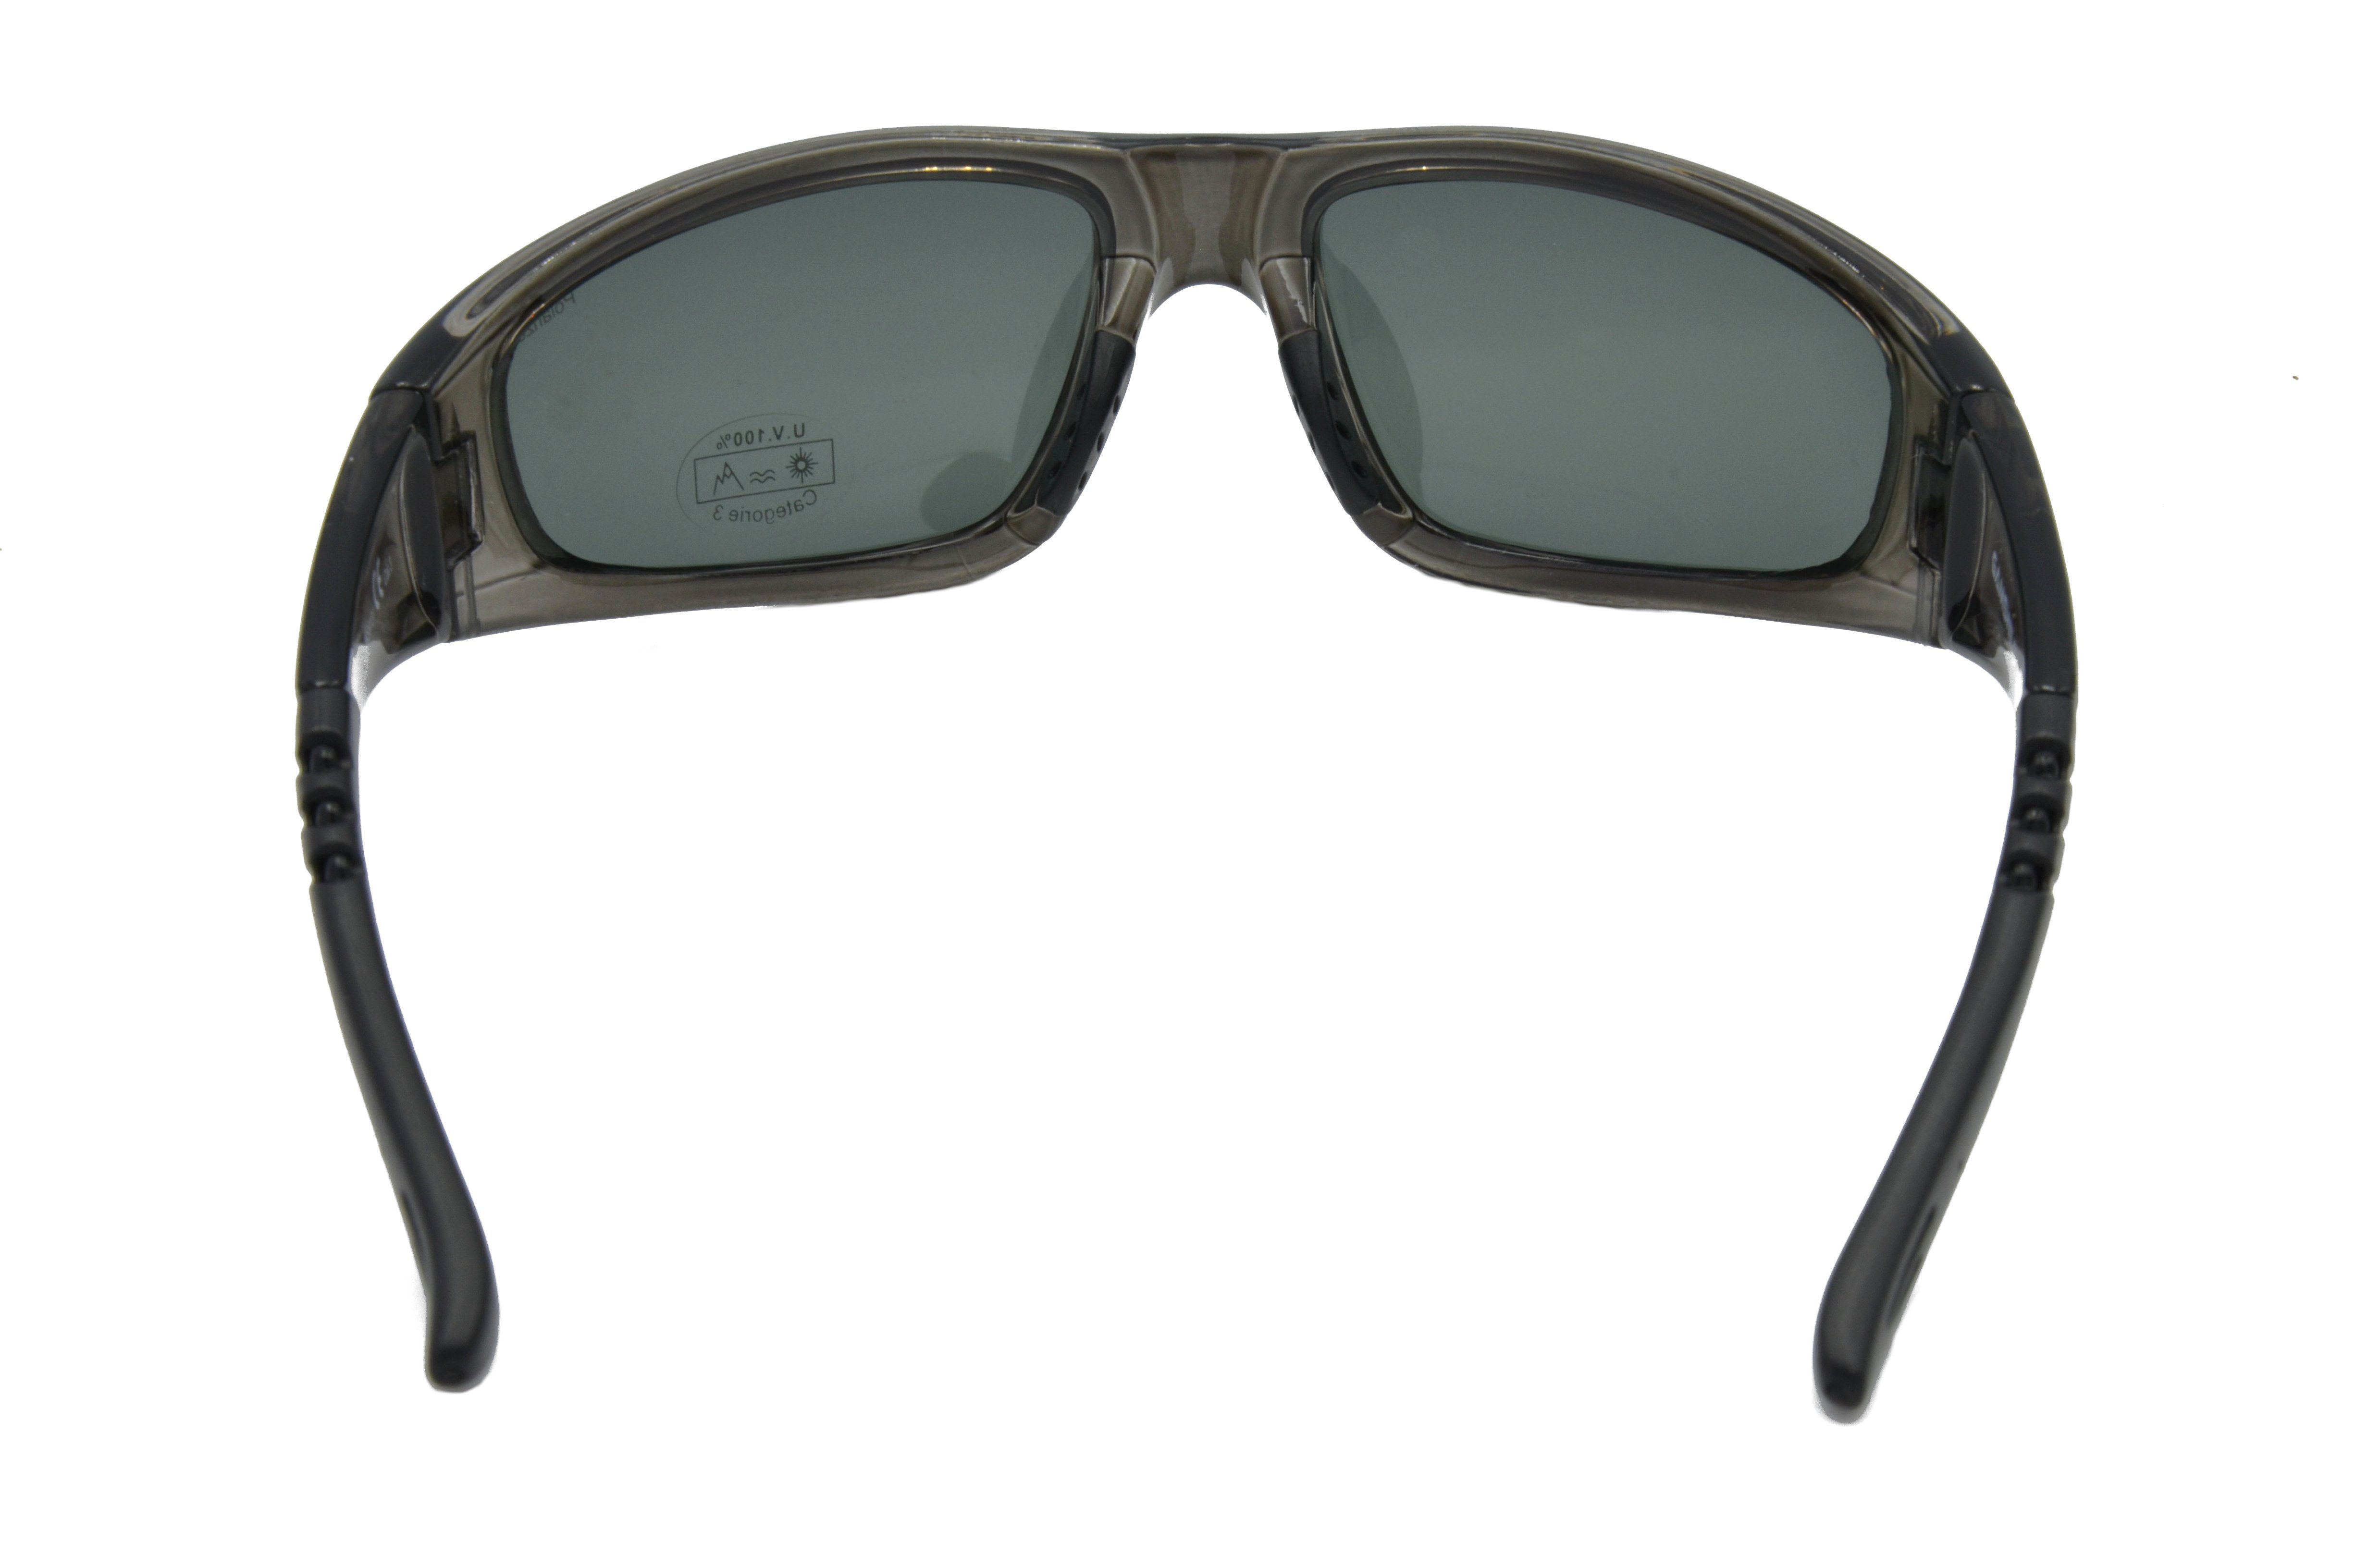 Gamswild Sportbrille WS9131 polarisiert Unisex, Damen Sonnenbrille braun, grau-transparent, Skibrille Fahrradbrille Herren